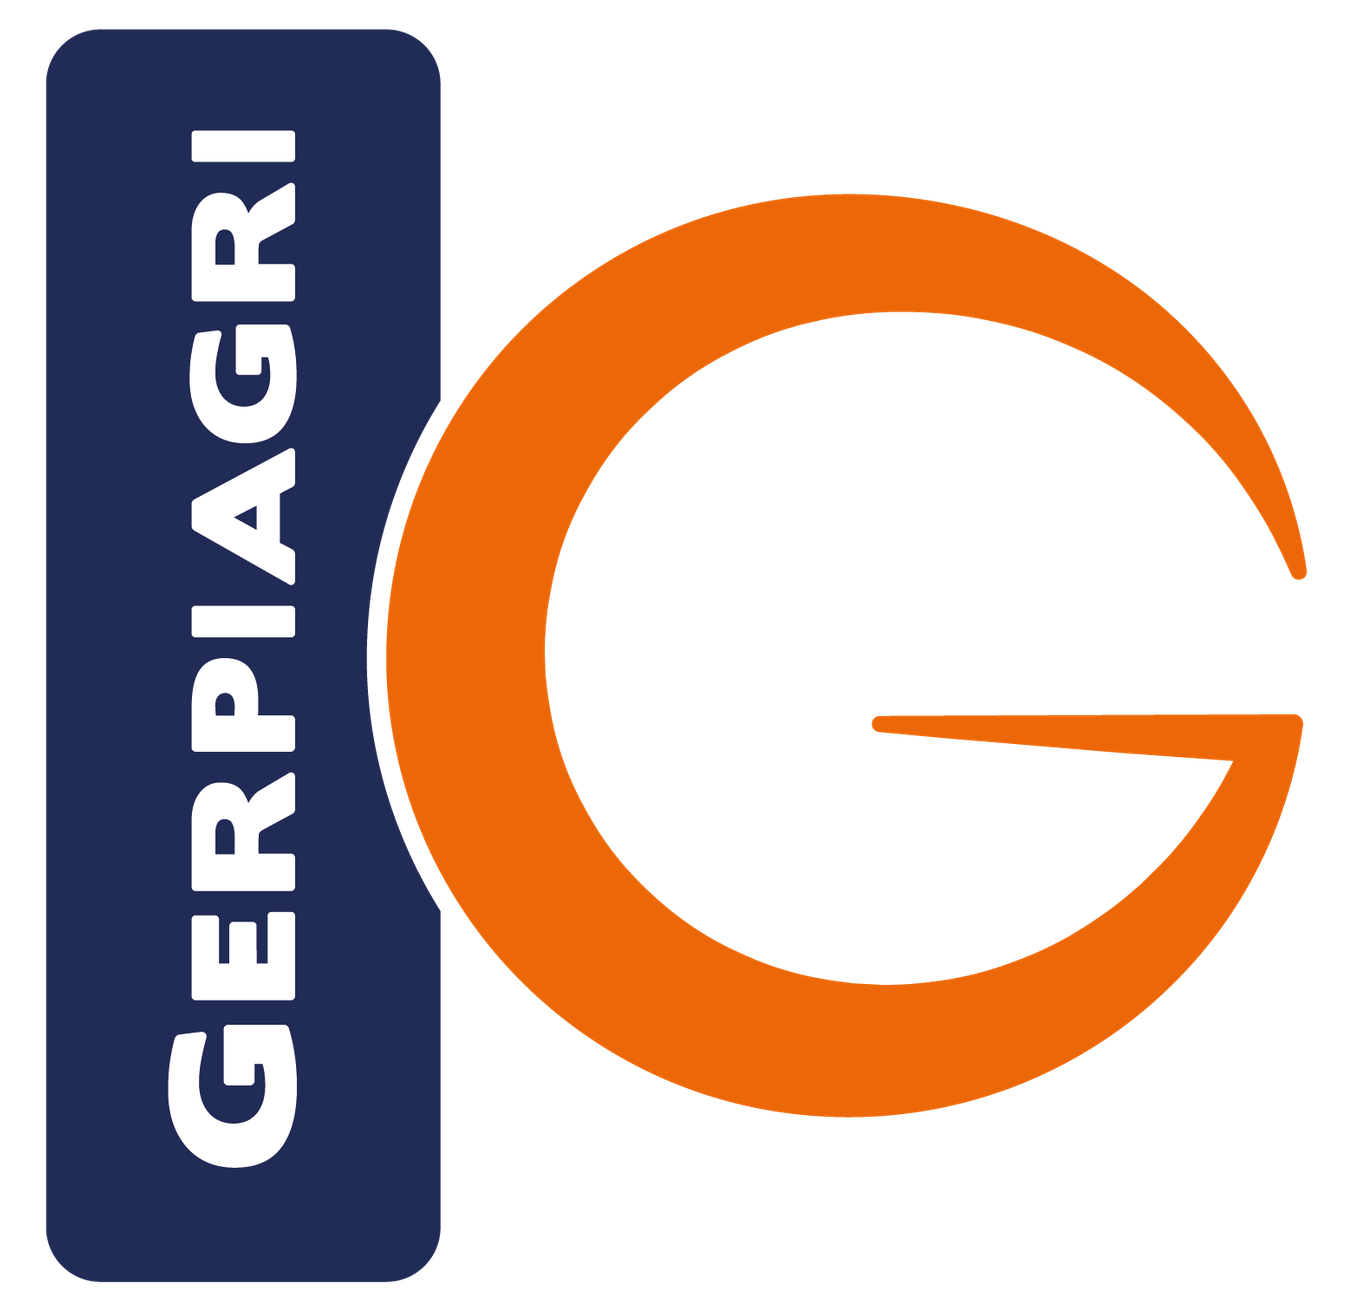 logo gerpi agri e1687523211774